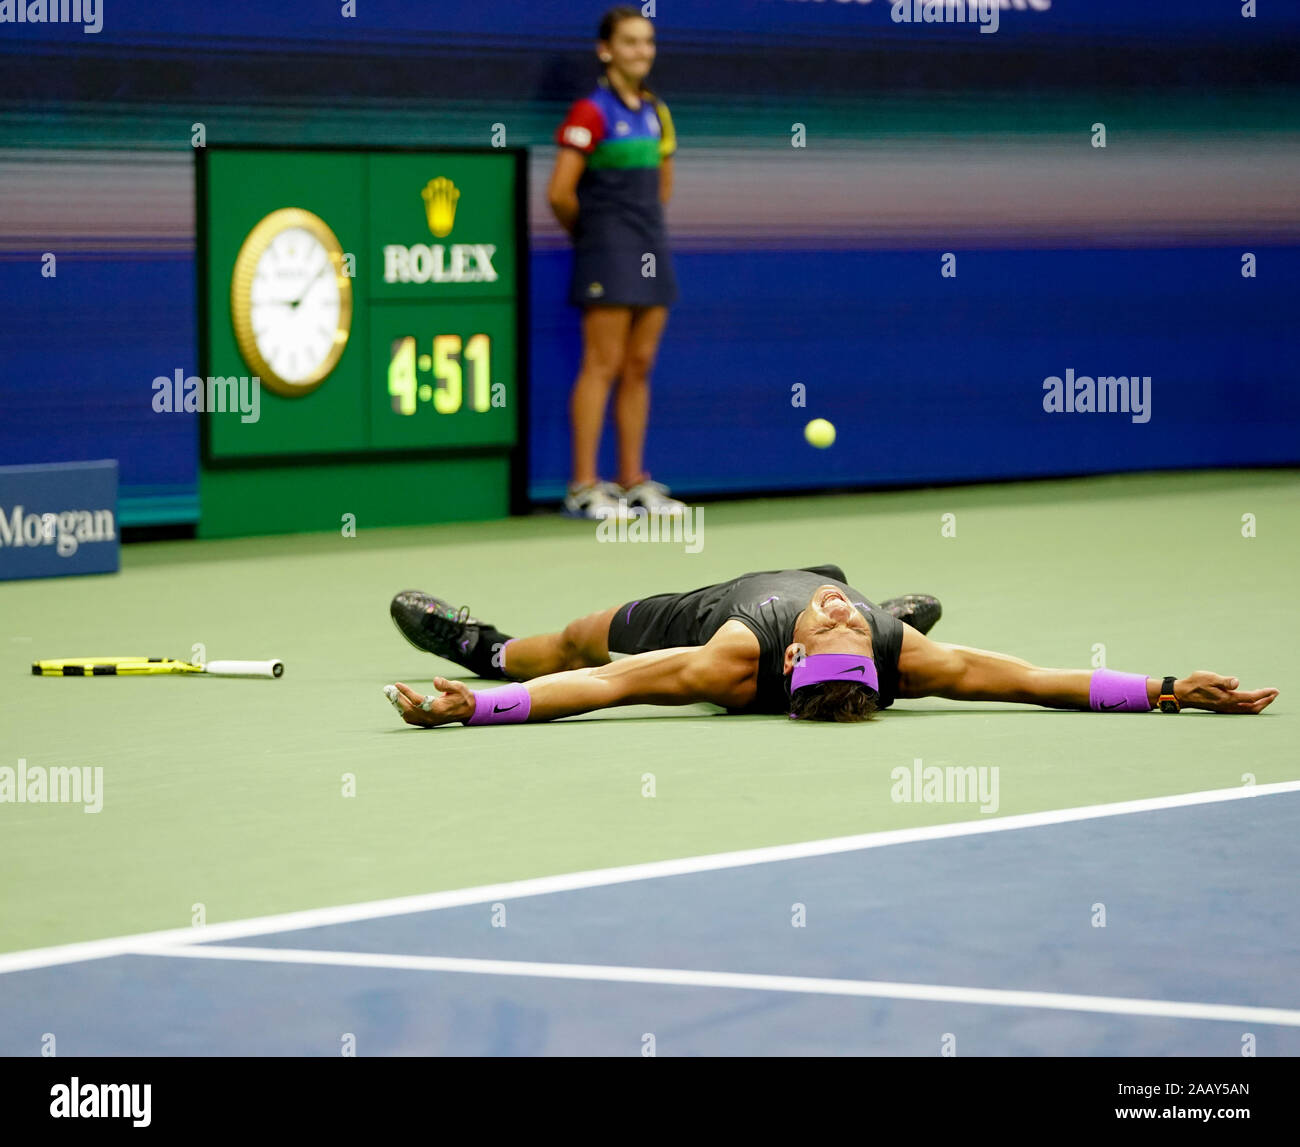 Joueur de tennis espagnol Rafael Nadal célèbre à la balle de match et se  laisse tomber au sol pendant le tournoi de tennis de l'US Open 2019, New  York Photo Stock -